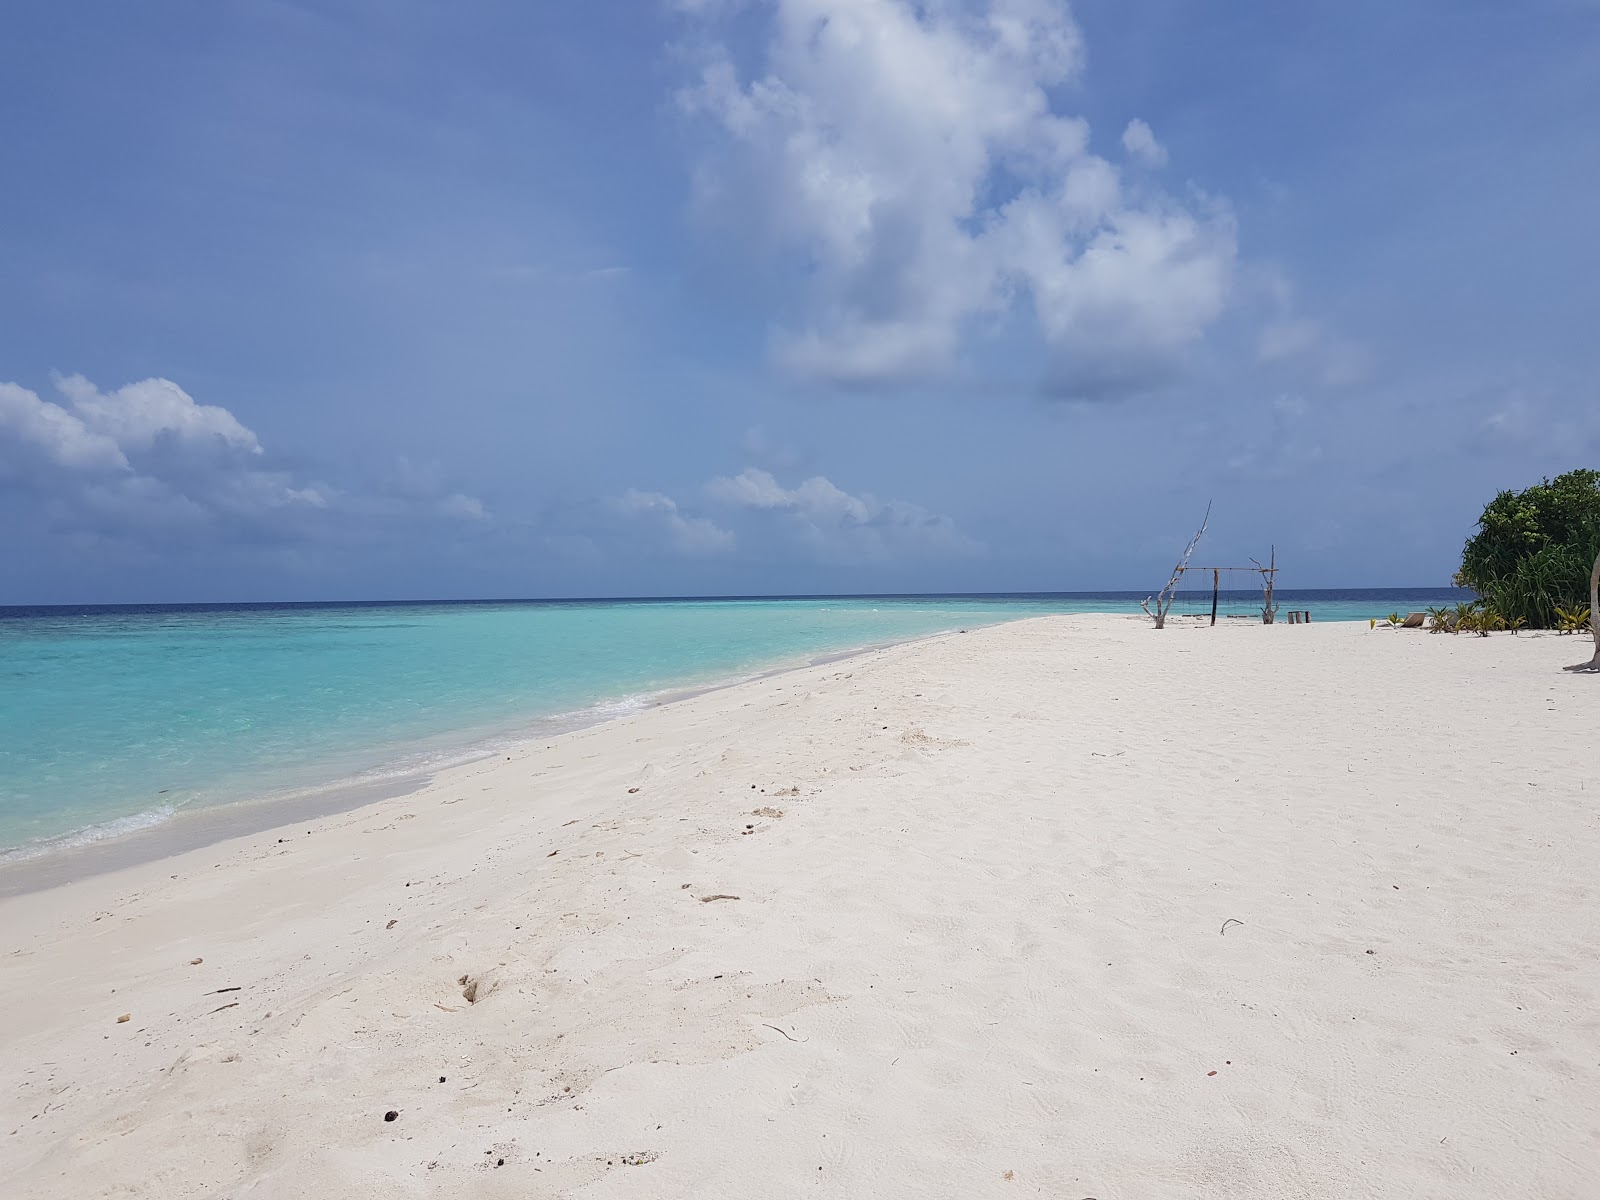 Zdjęcie Bikini beach - popularne miejsce wśród znawców relaksu